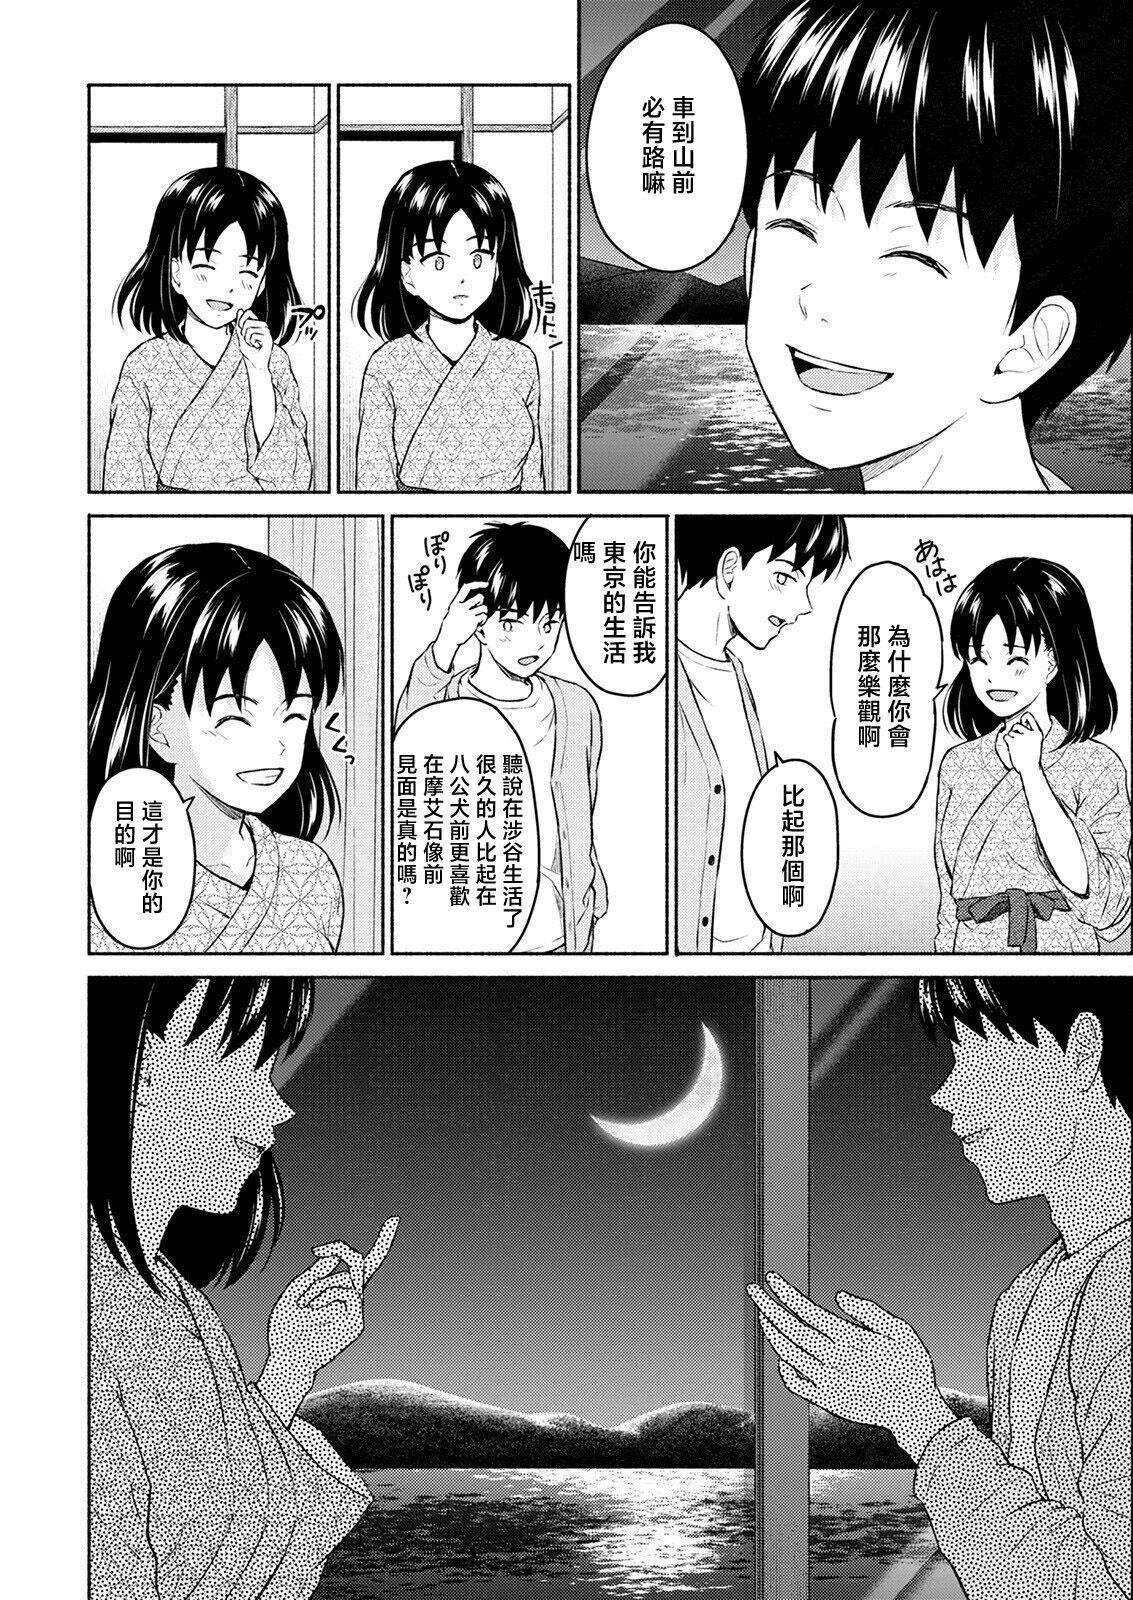 Foreplay Marude Rokugatsu no Kohan o Fuku Kaze no you ni Zenpen Jock - Page 10